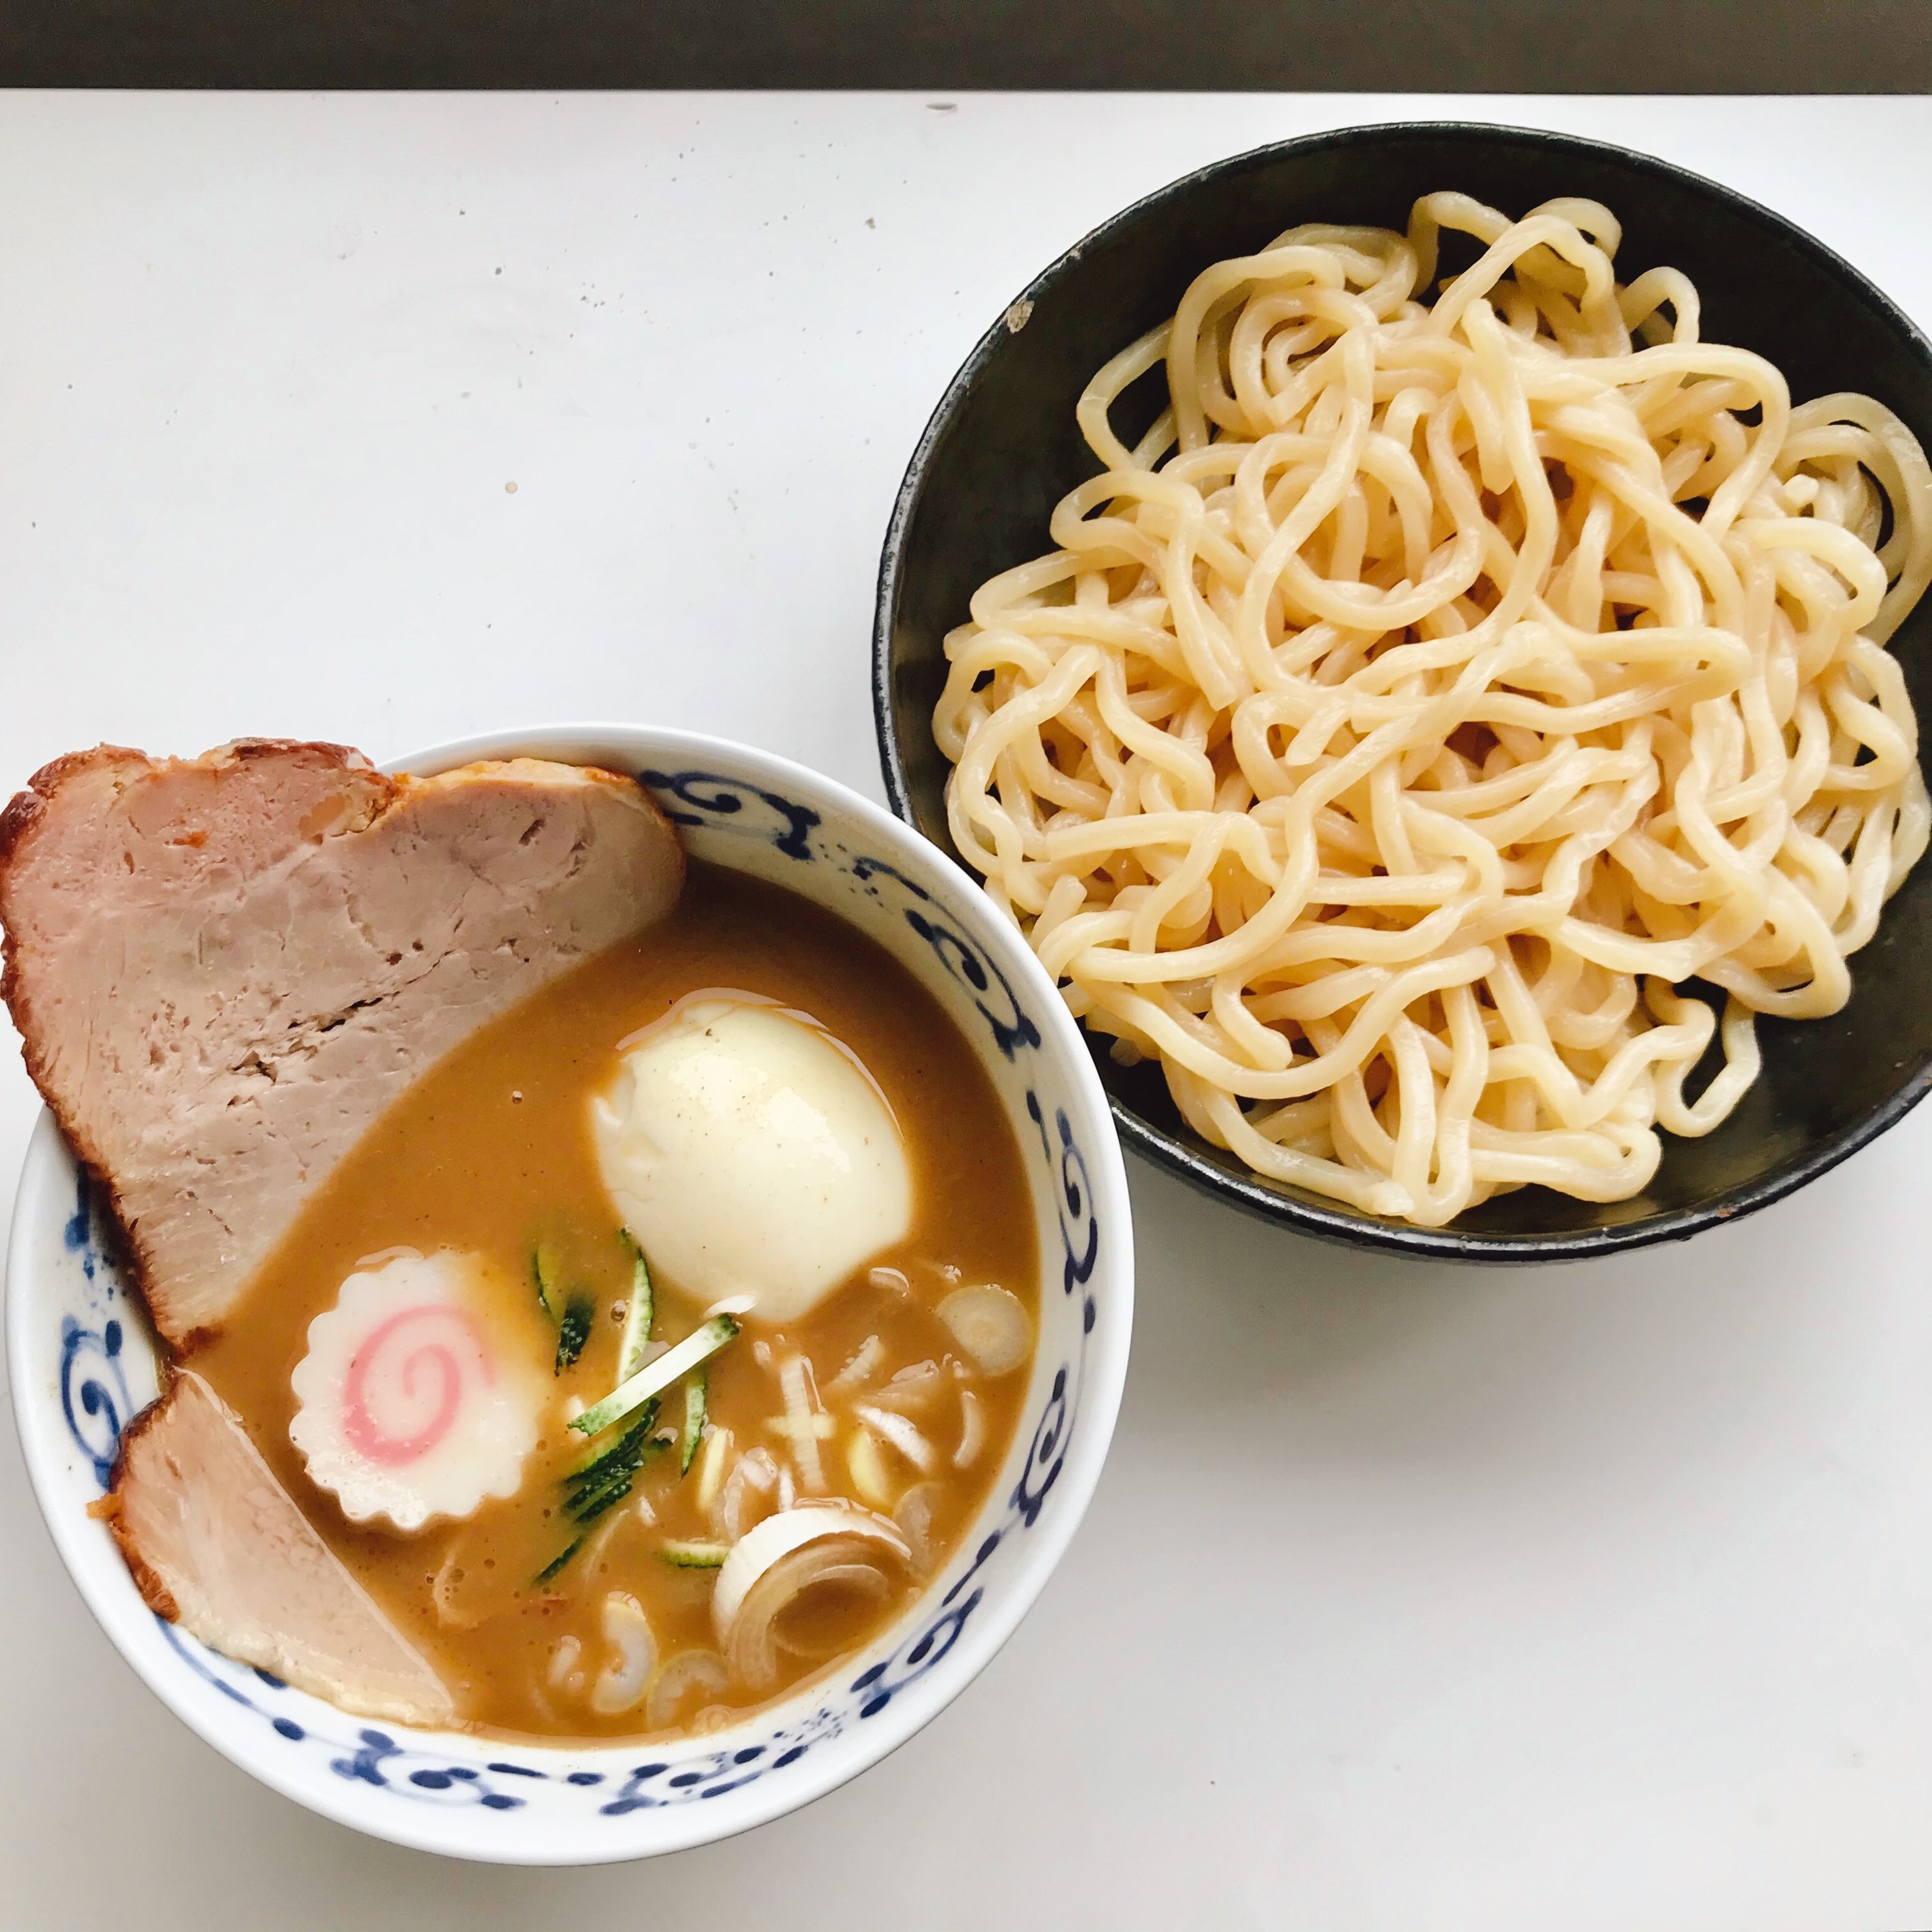 日本一の行列ラーメン店「とみ田」のつけ麺をお取り寄せ。深刻な